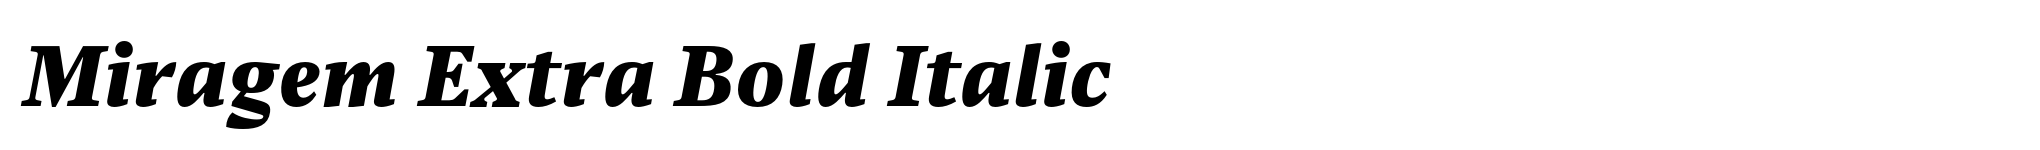 Miragem Extra Bold Italic image